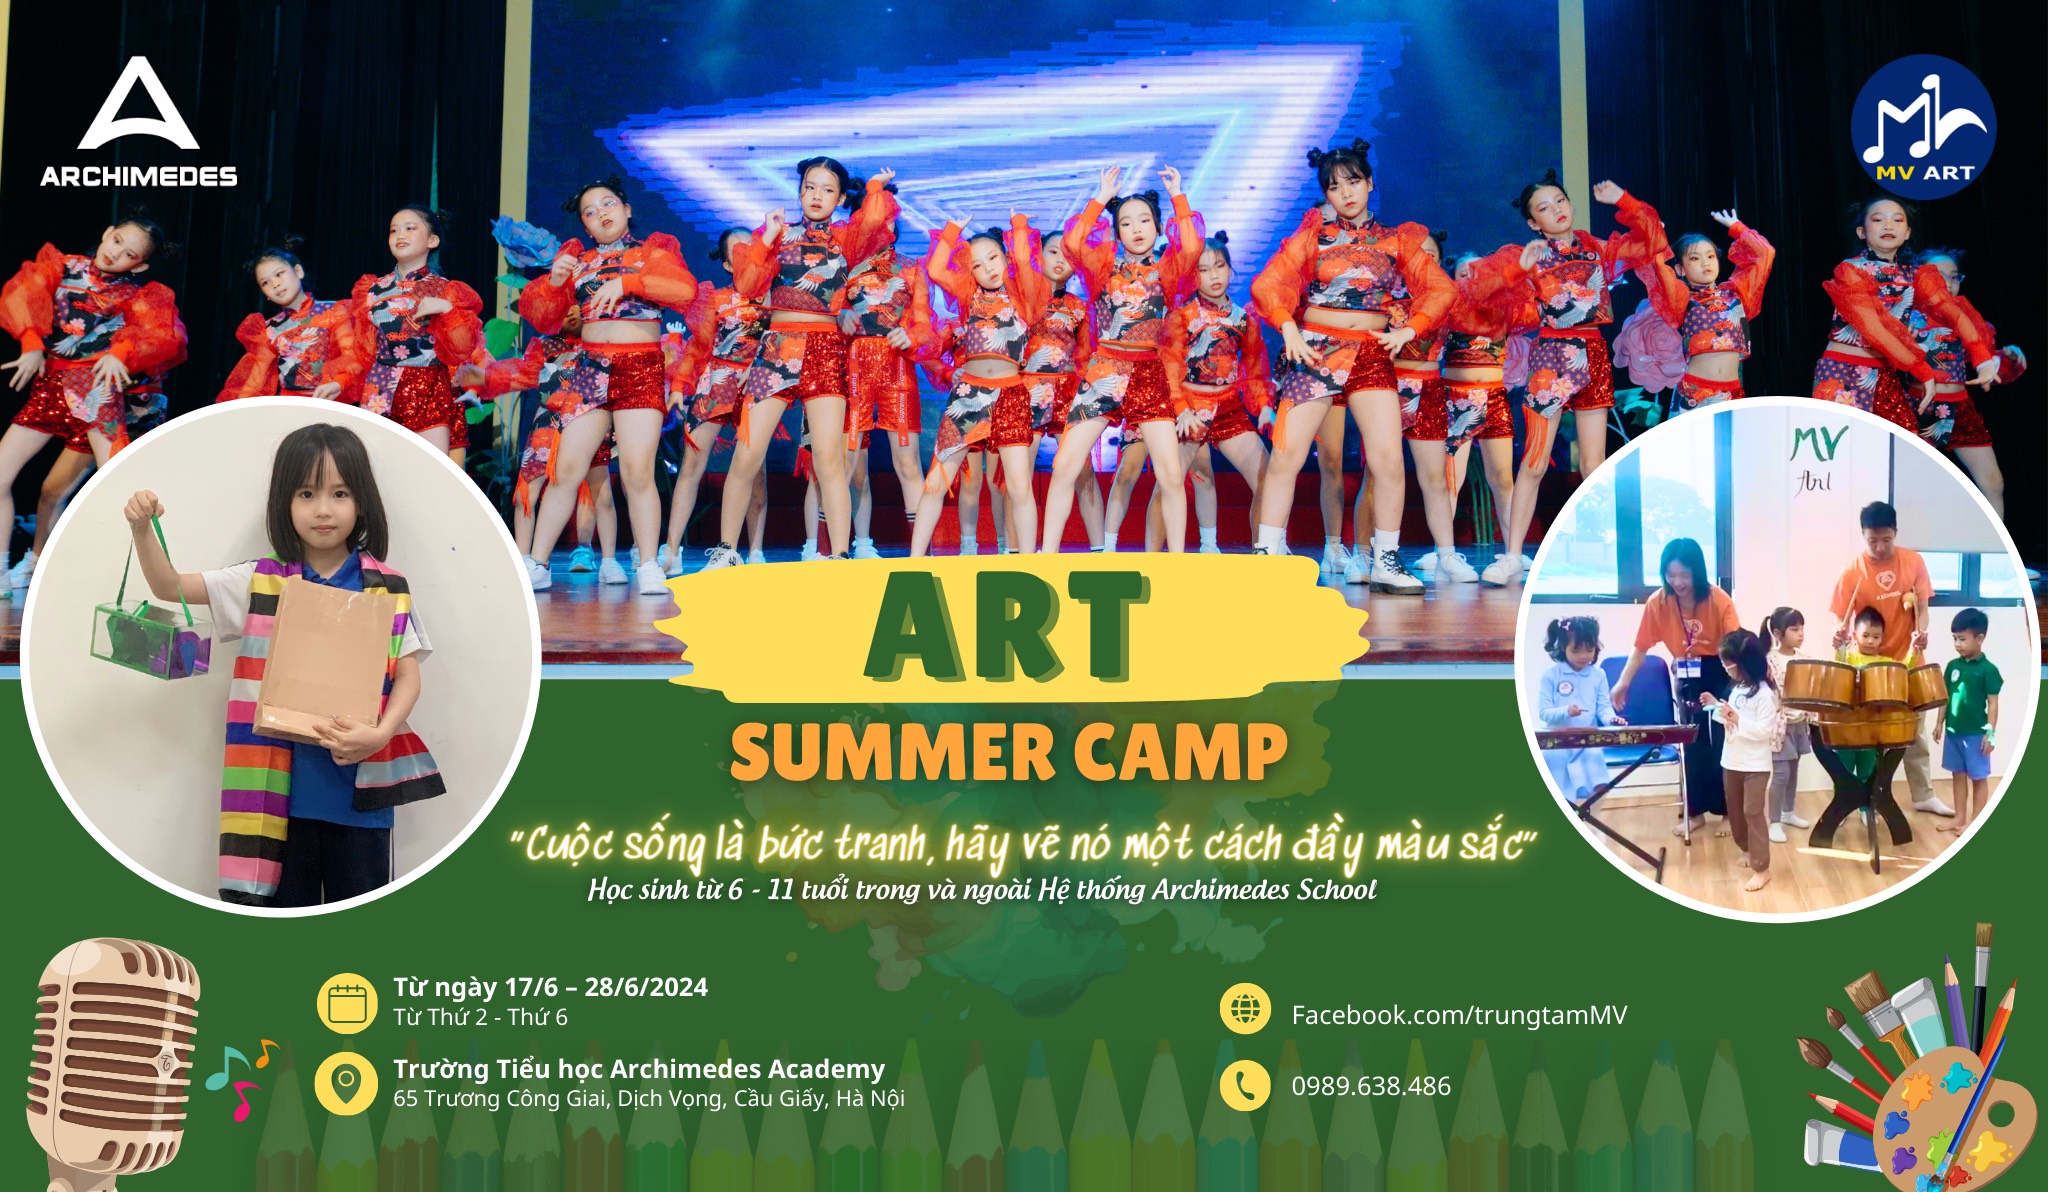 ART SUMMER CAMP: Khám phá niềm vui mùa hè cùng thế giới nghệ thuật đa màu sắc 